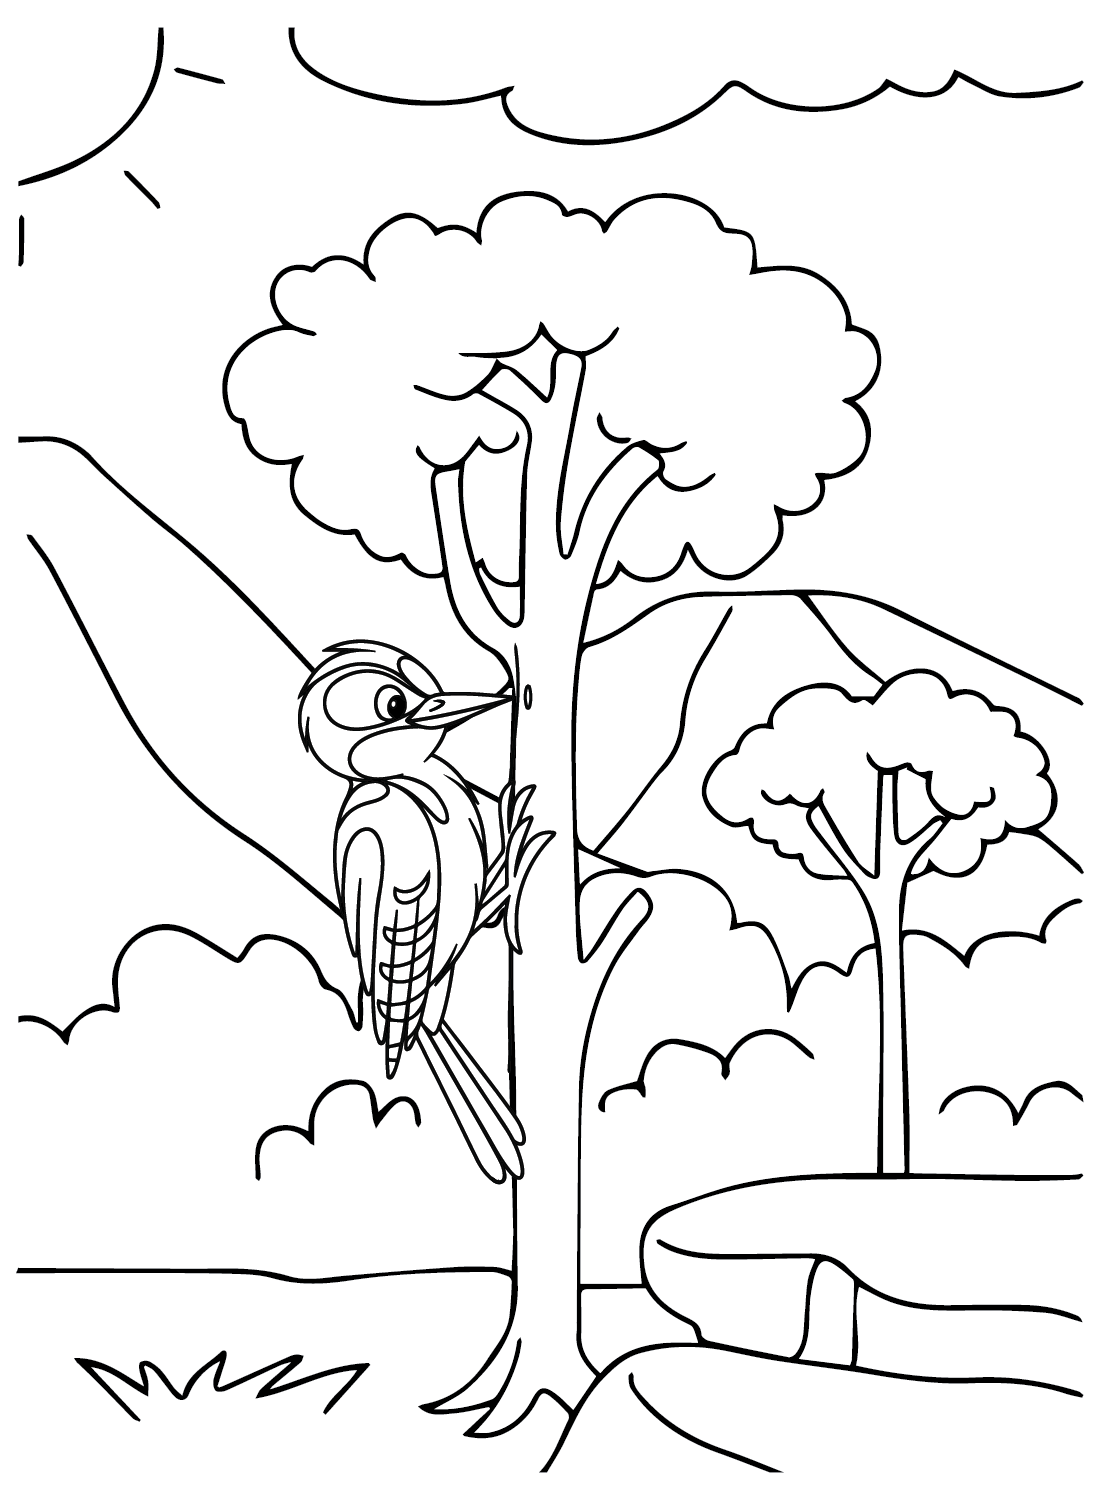 Página para colorear de pájaro carpintero de Woodpecker